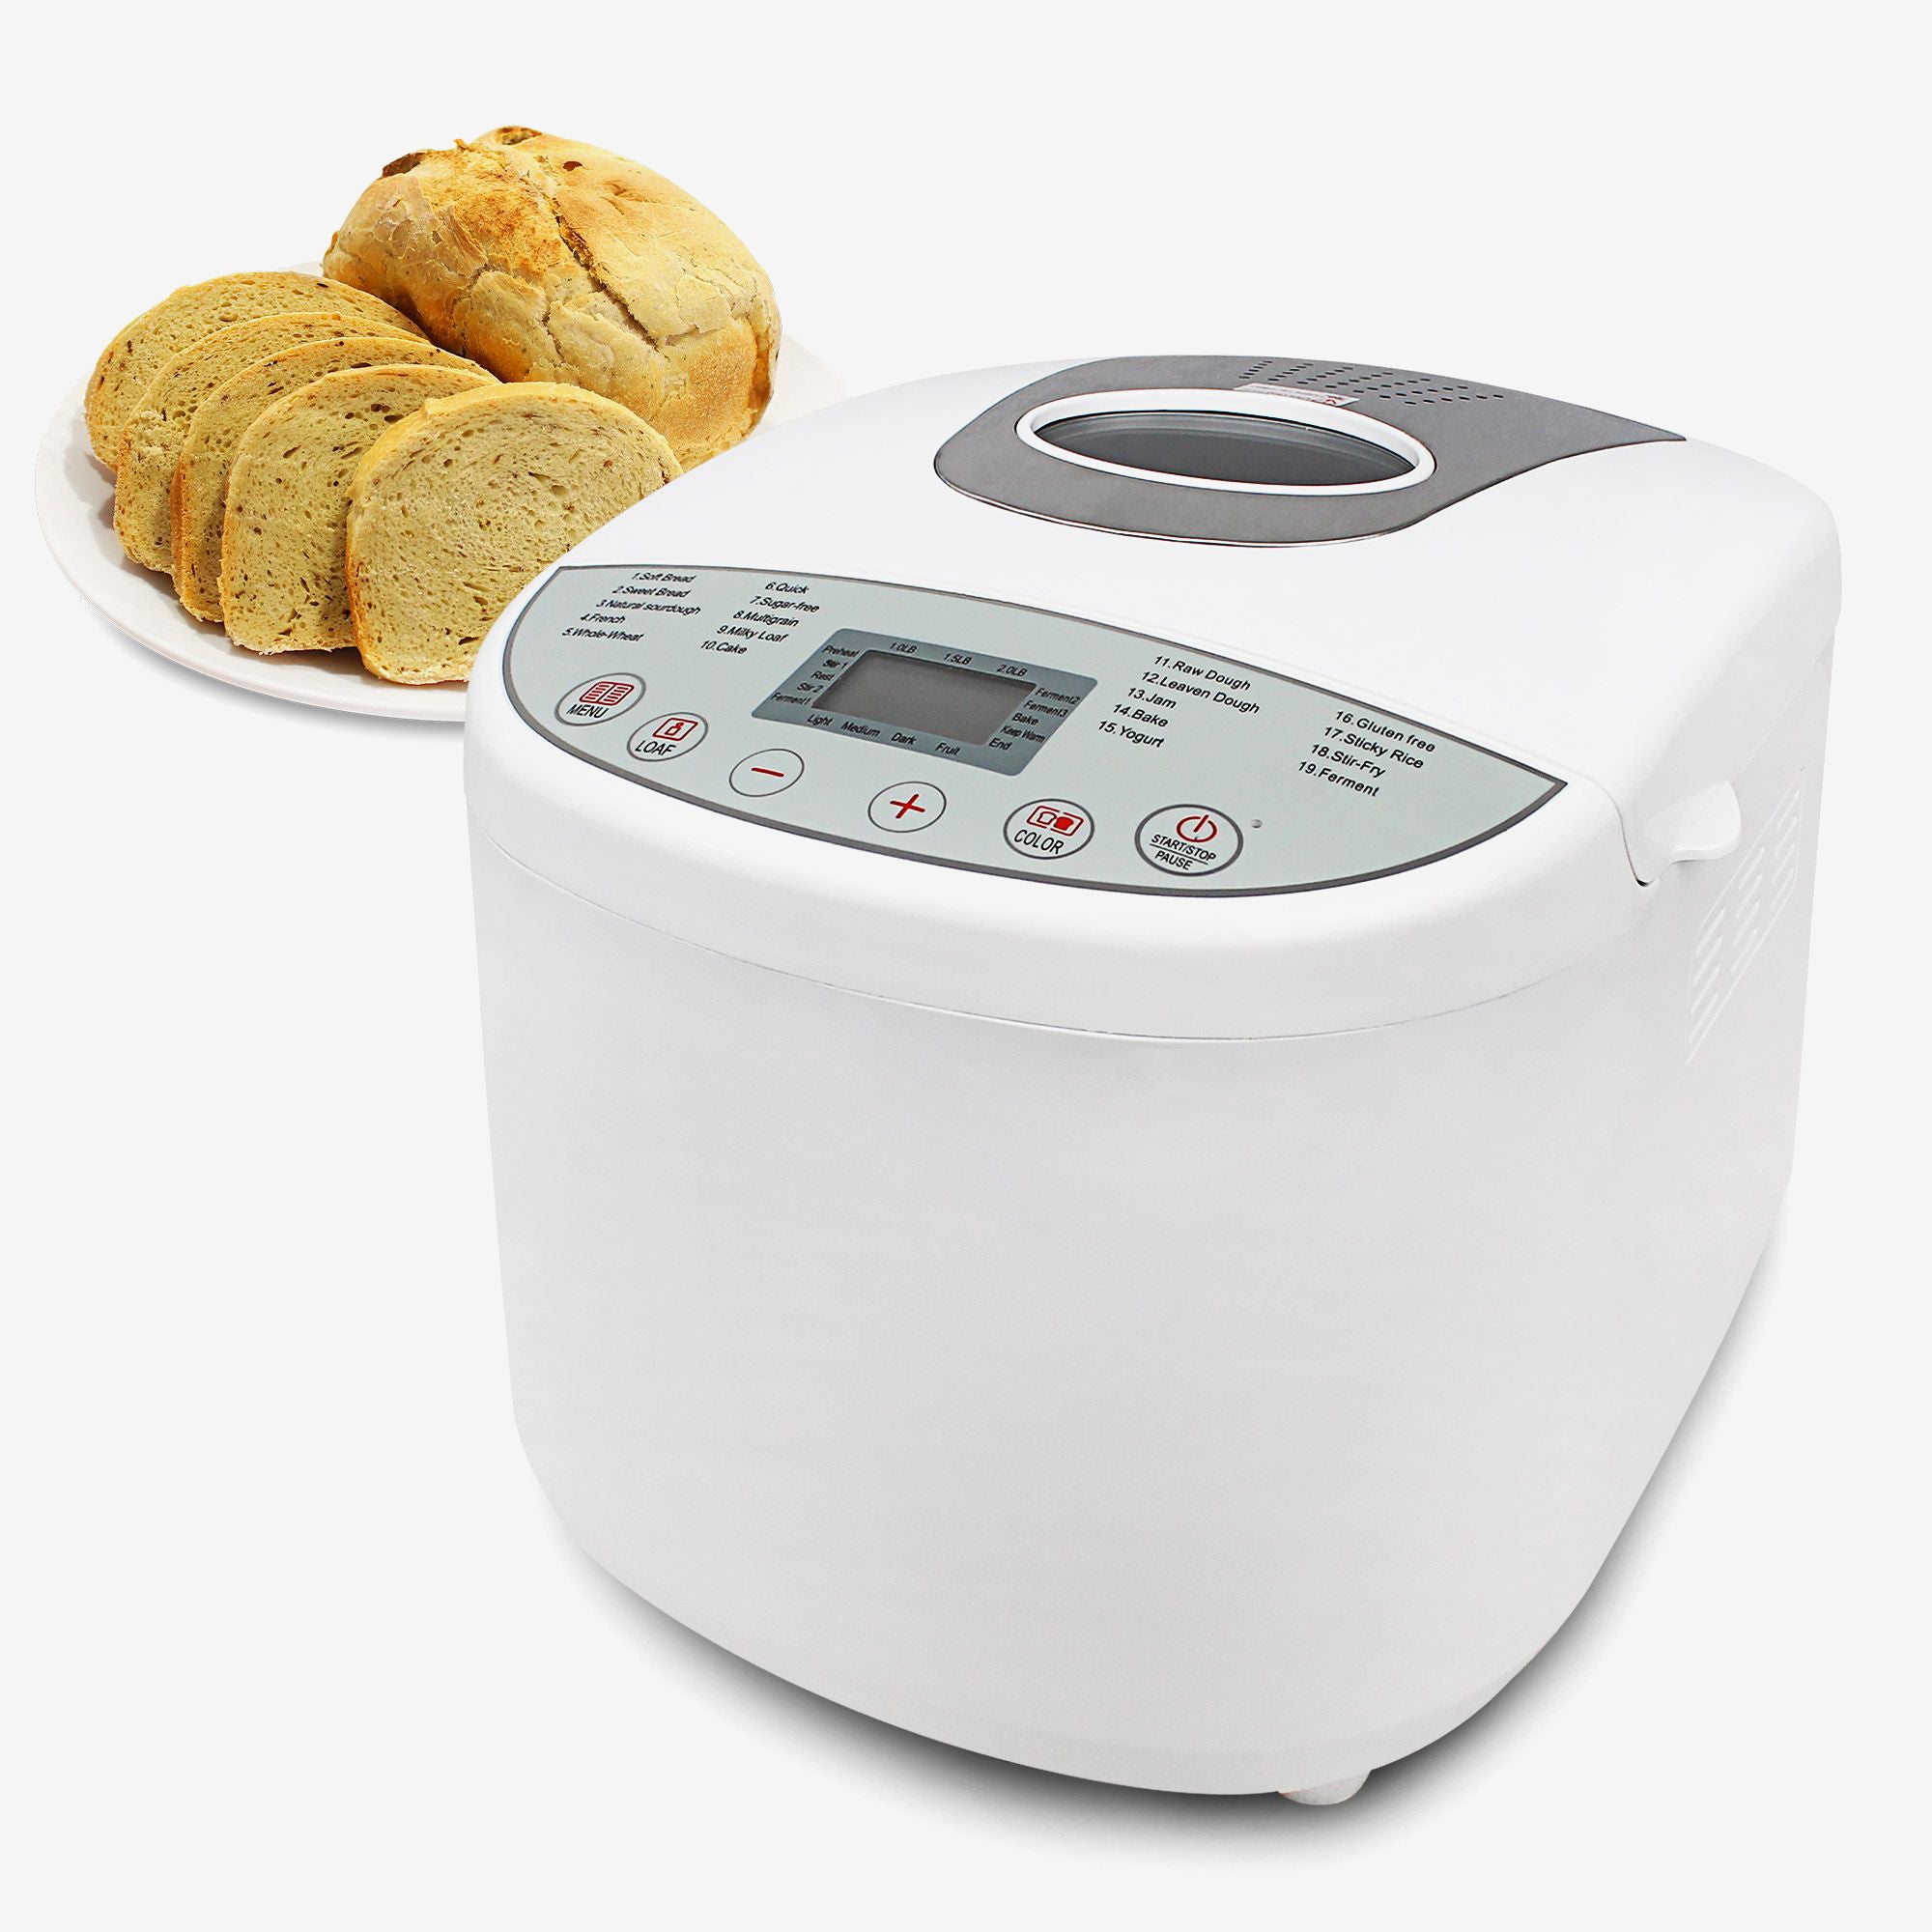 Homemade-Bread-Maker-Jam-Maker-19-Programs-Digital-Display-White-Material-Plastic